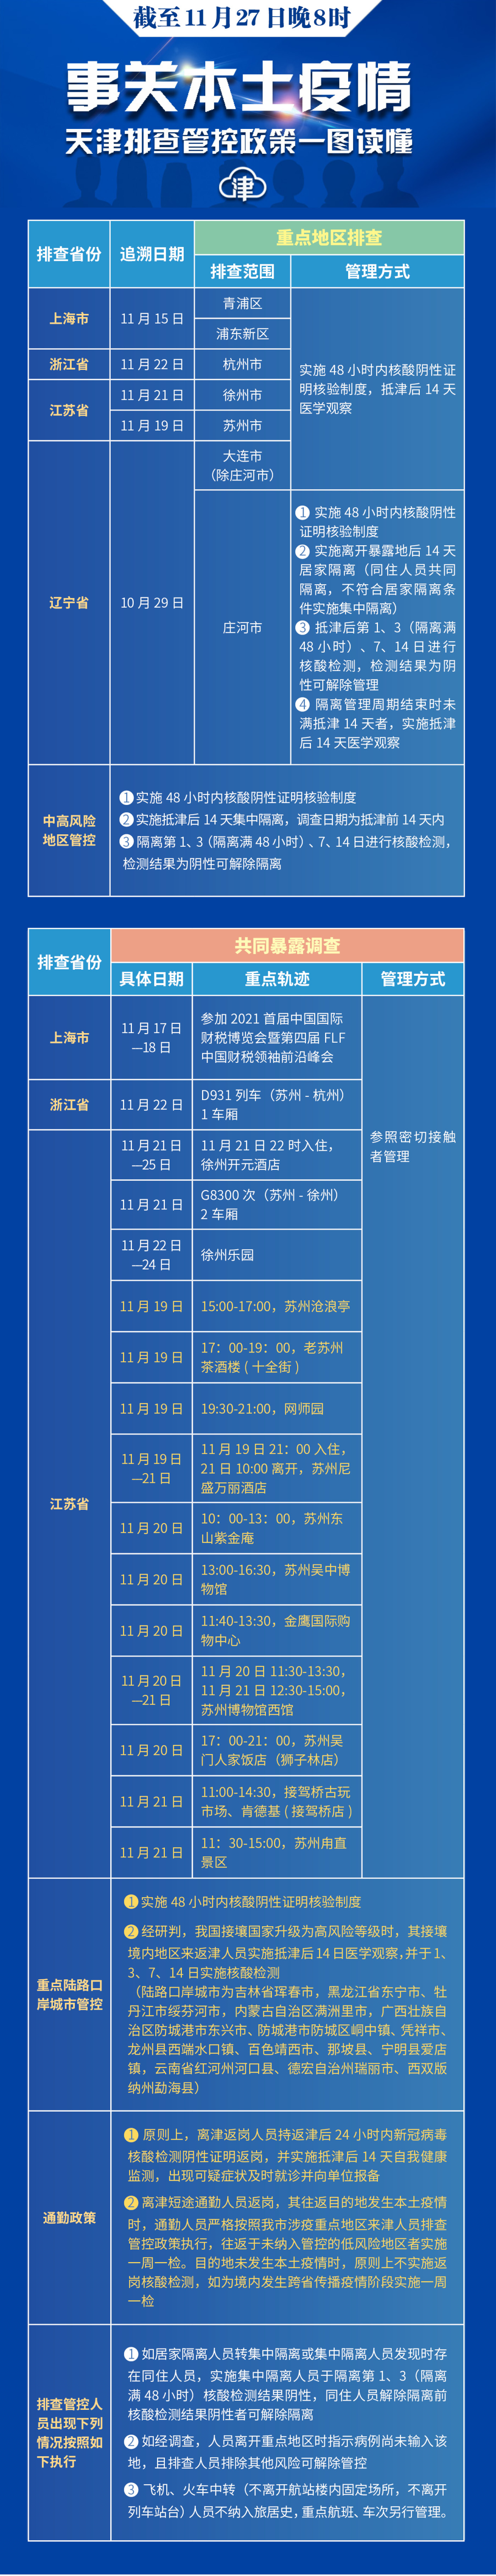 分享 | 离津返岗注意这个要求！天津最新排查管控范围（截至11.27晚8时） (http://www.k-yun.cn/) 国内 第1张